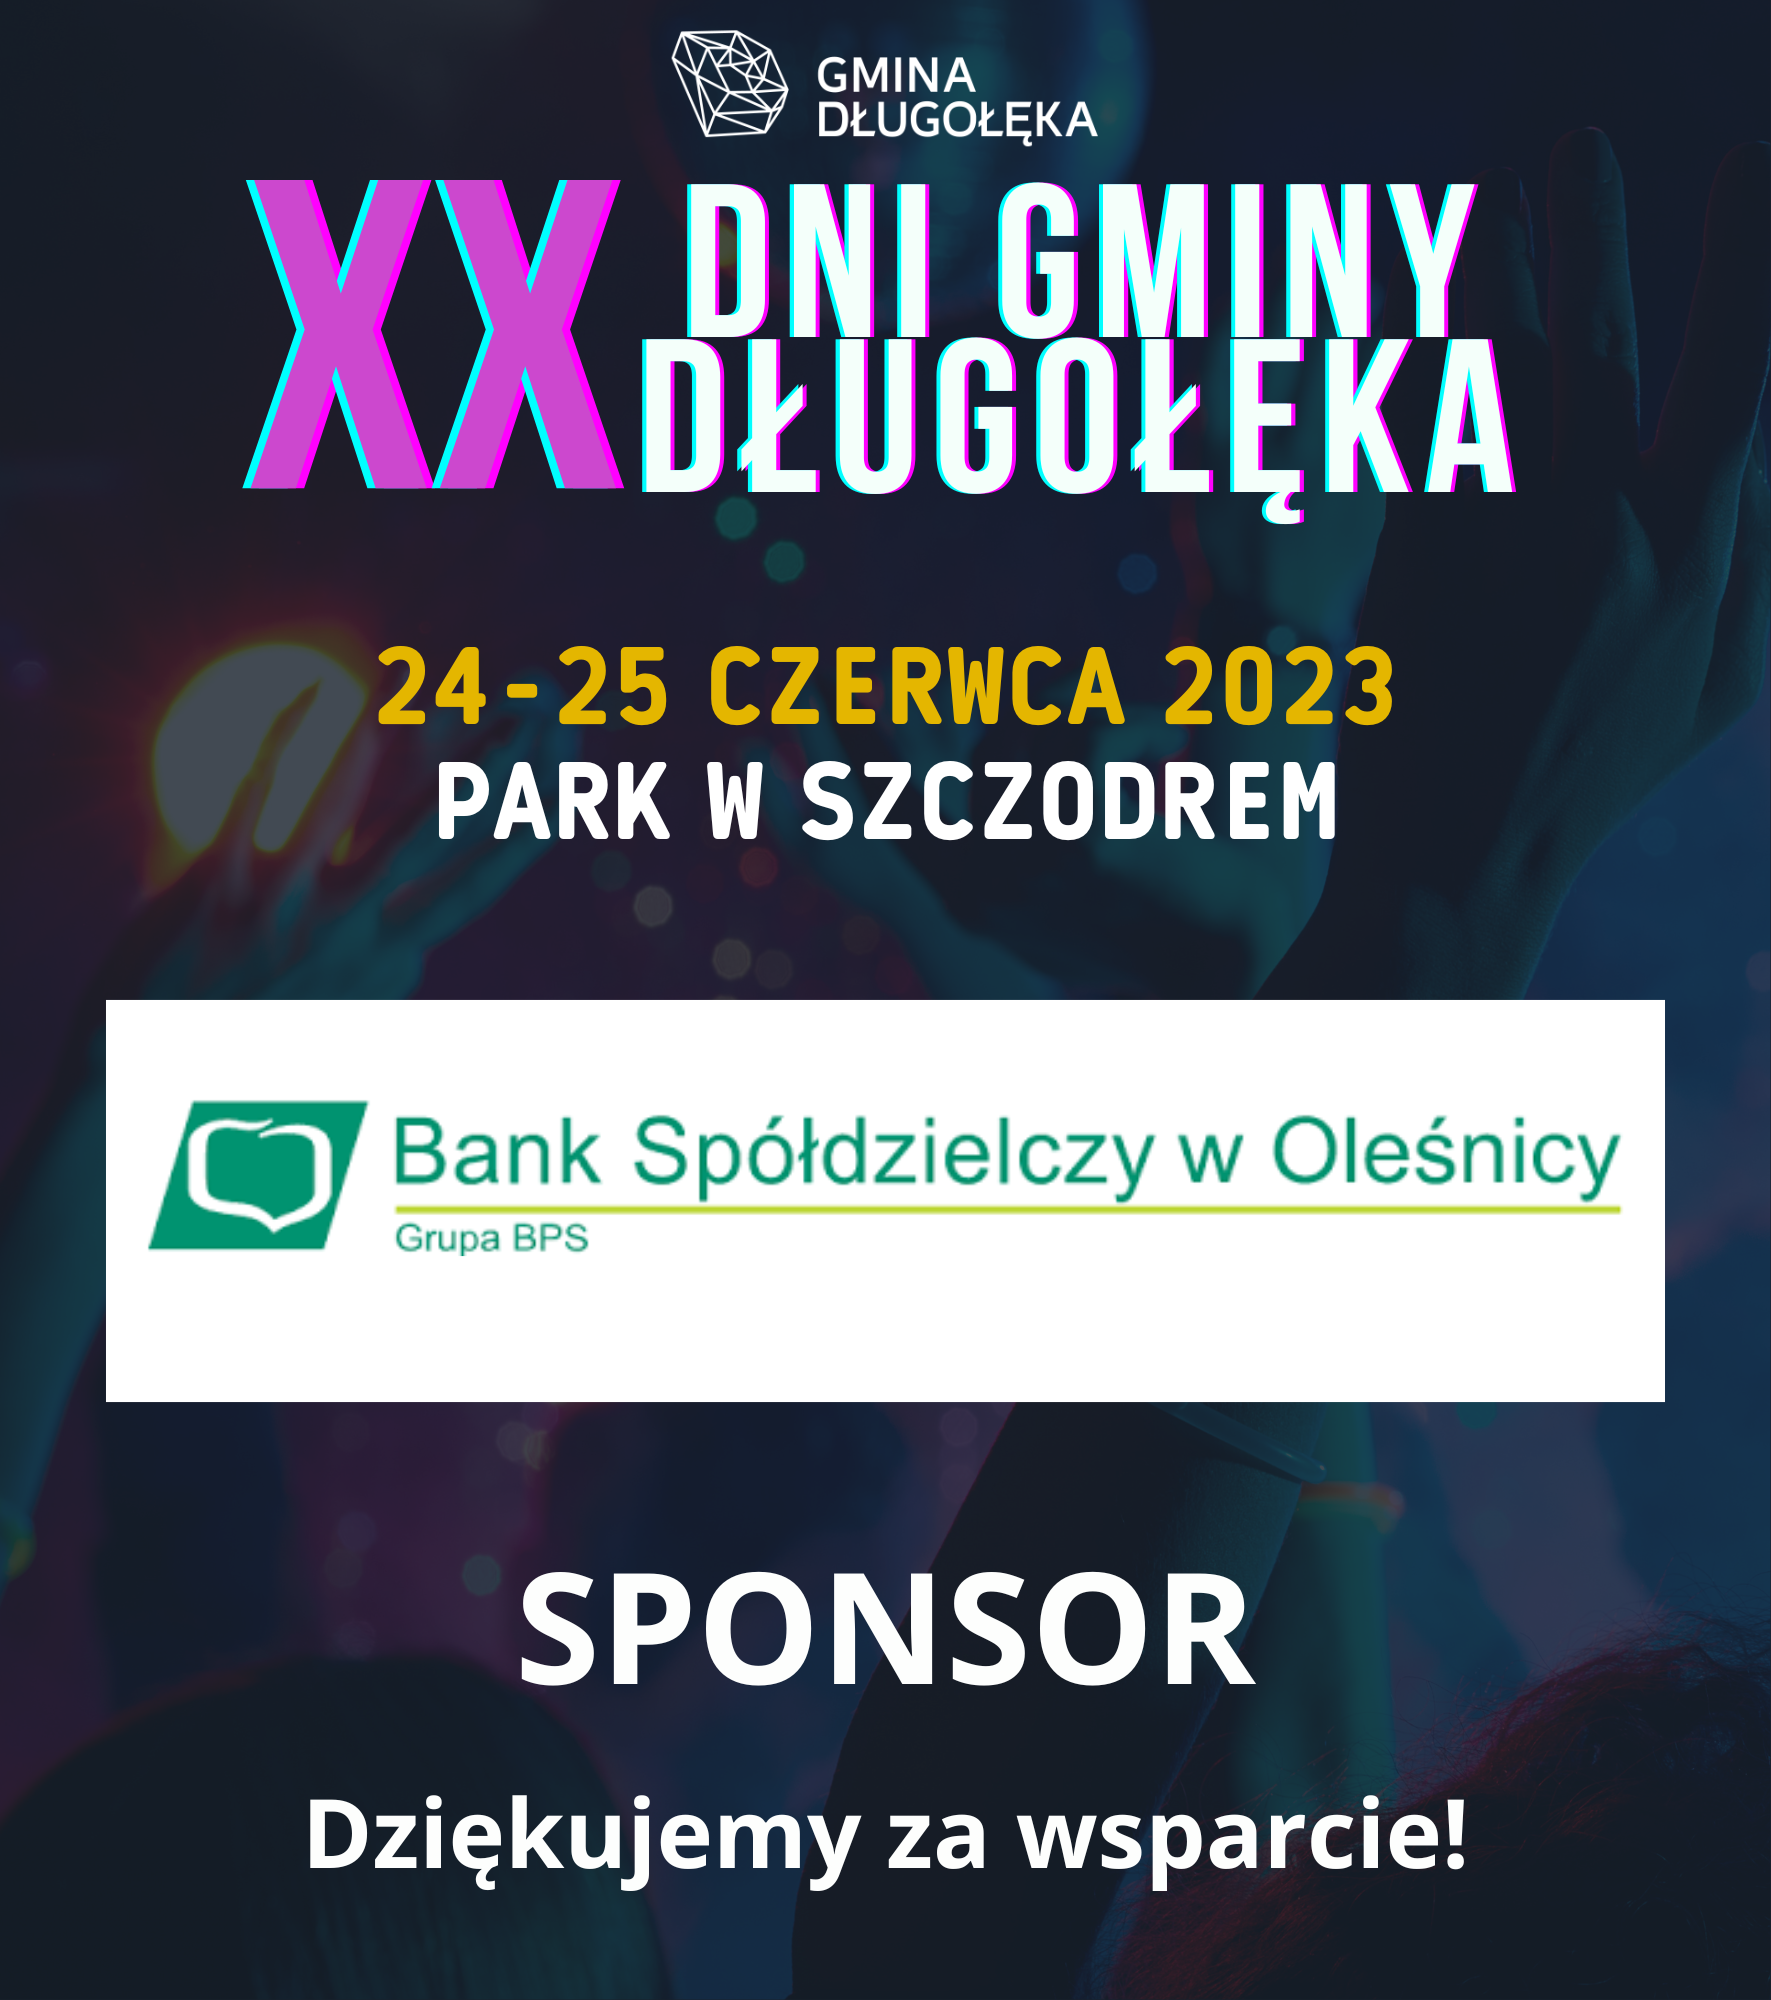 Bank Spółdzielczy w Oleśnicy sponsorem XX Dni Gminy Długołęka